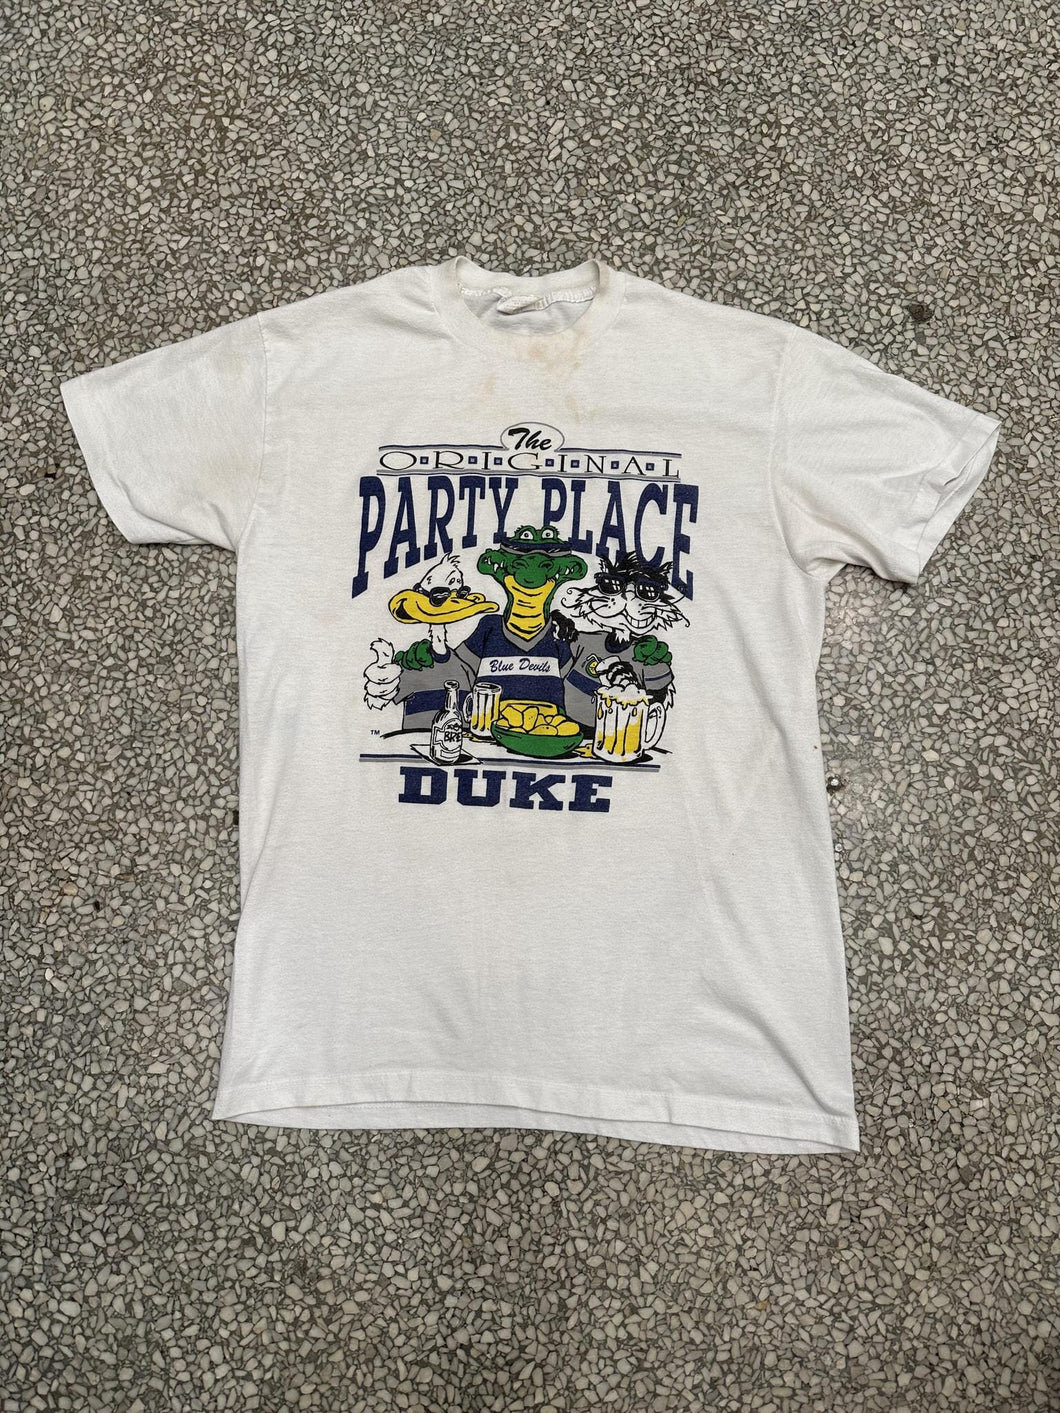 Duke Vintage 90s The Original Party Place Paper Thin ABC Vintage 